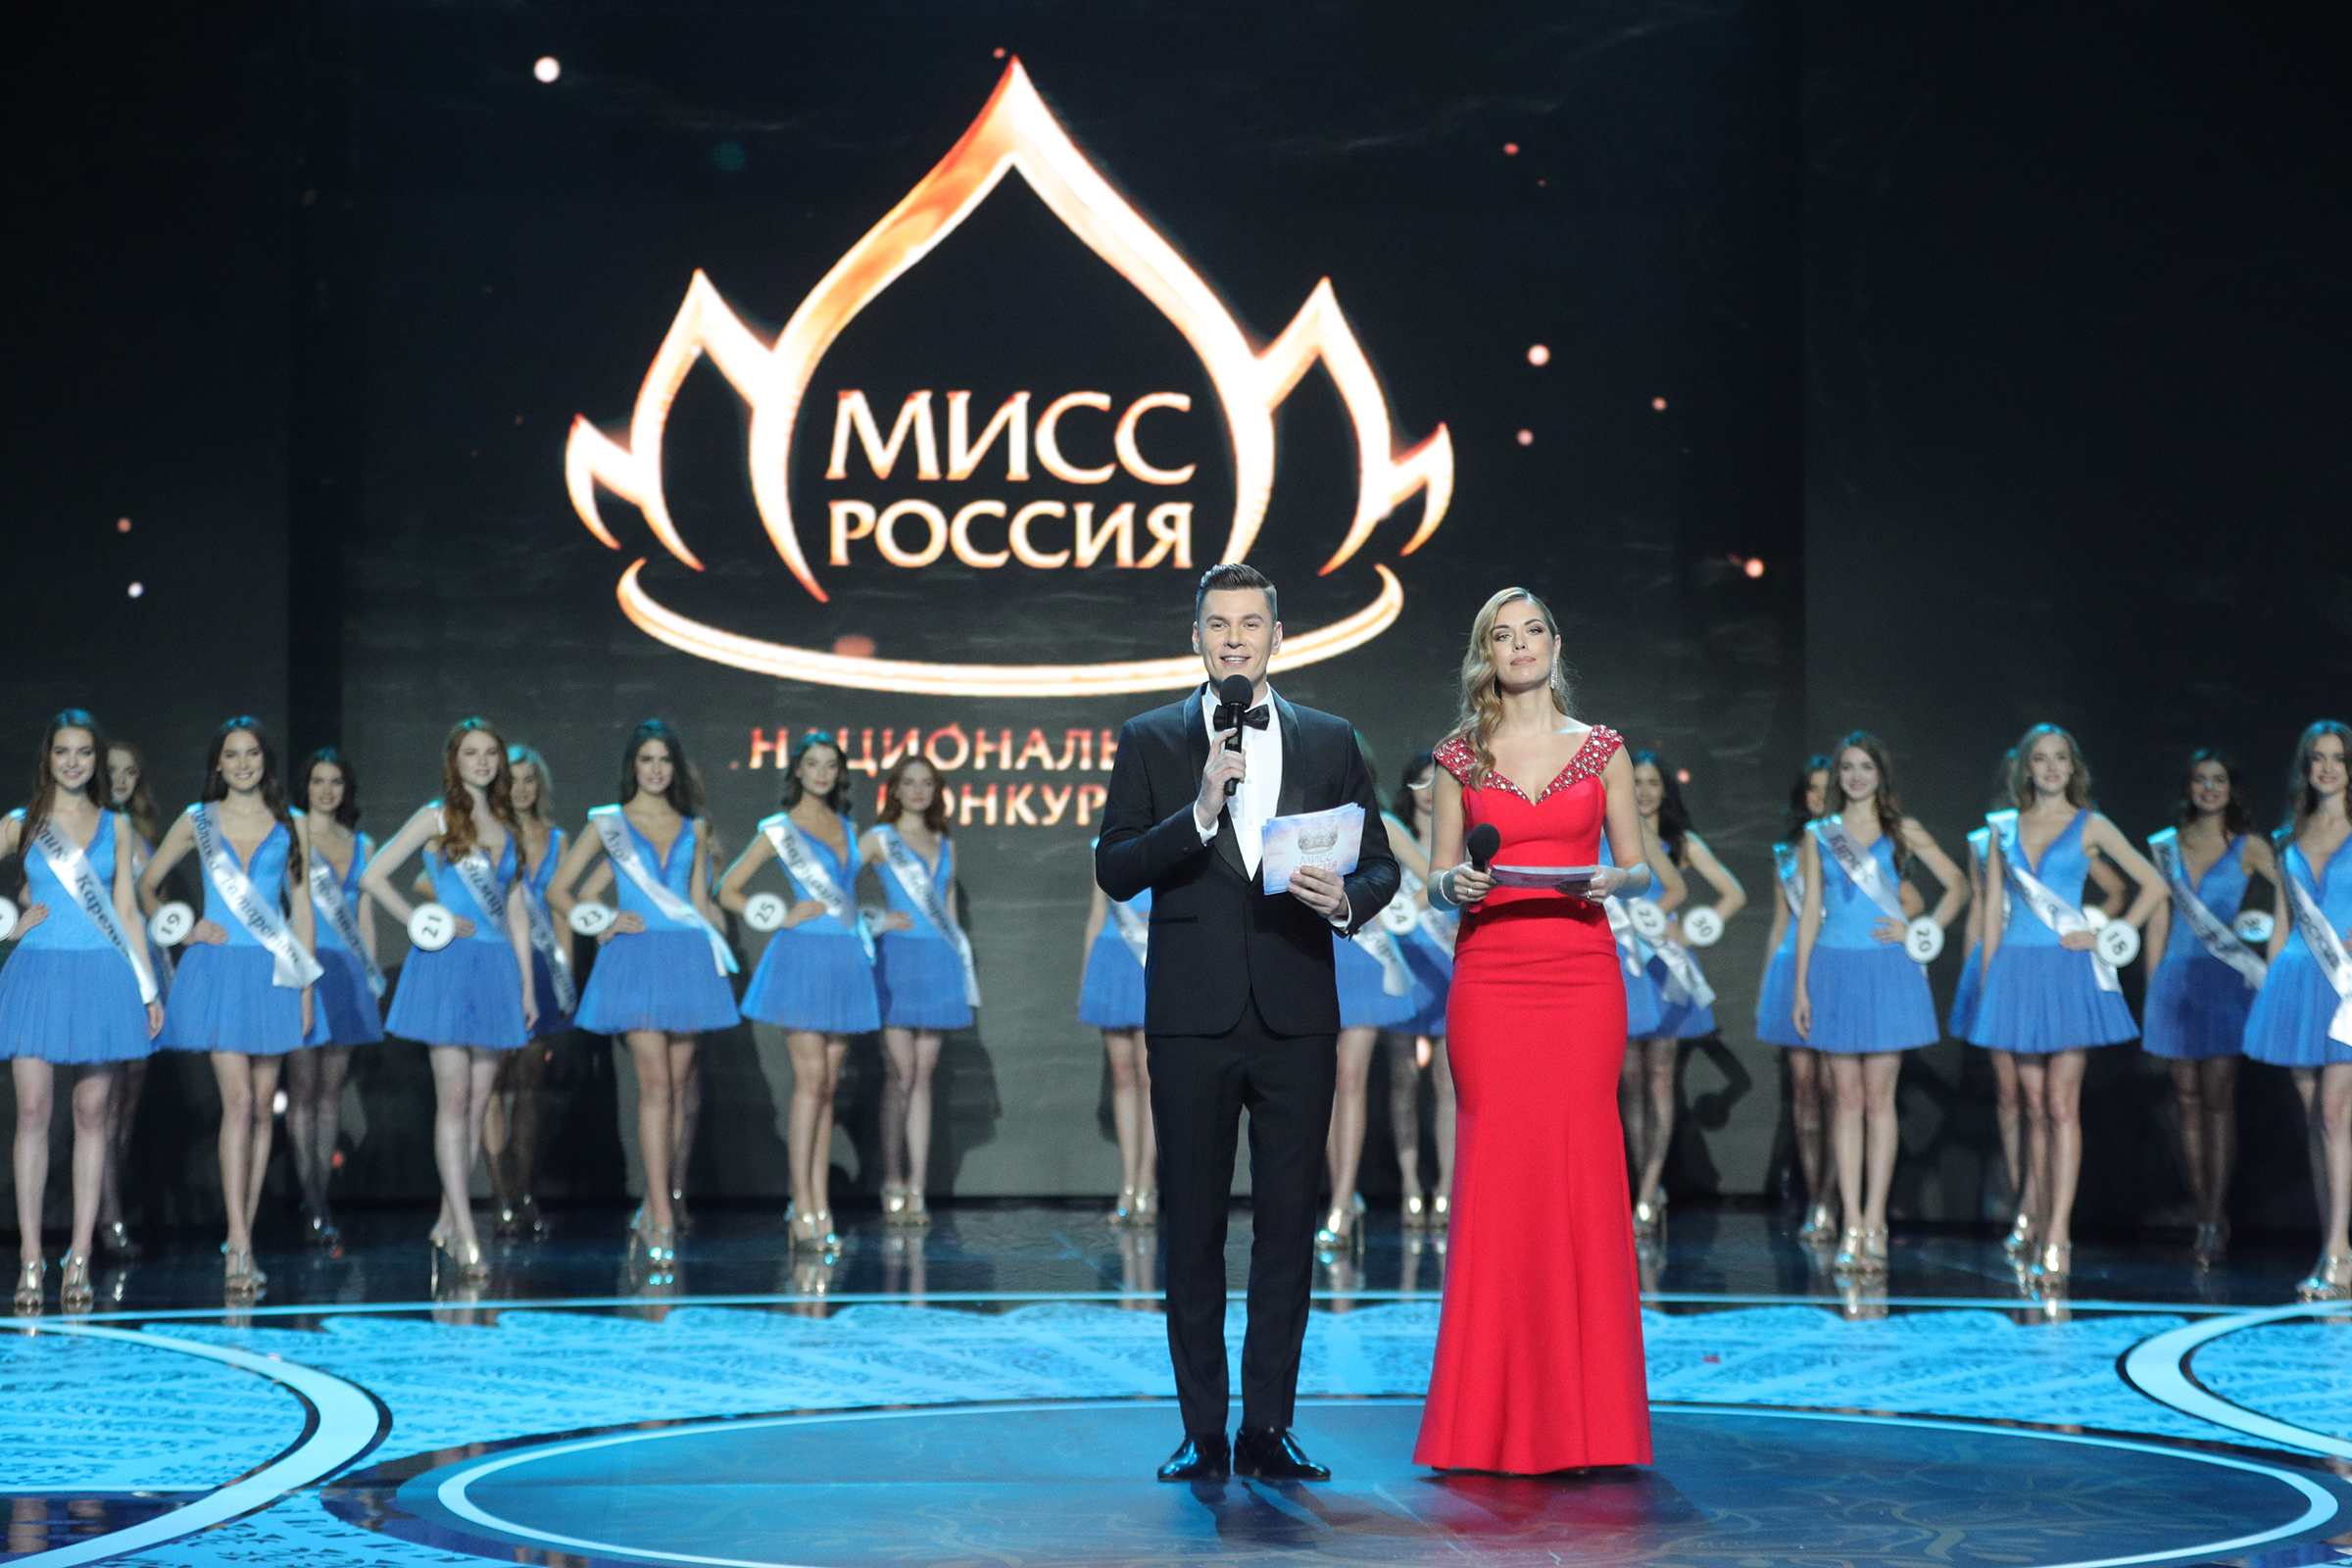 Ведущие церемонии Максим Привалов и Вера Красова